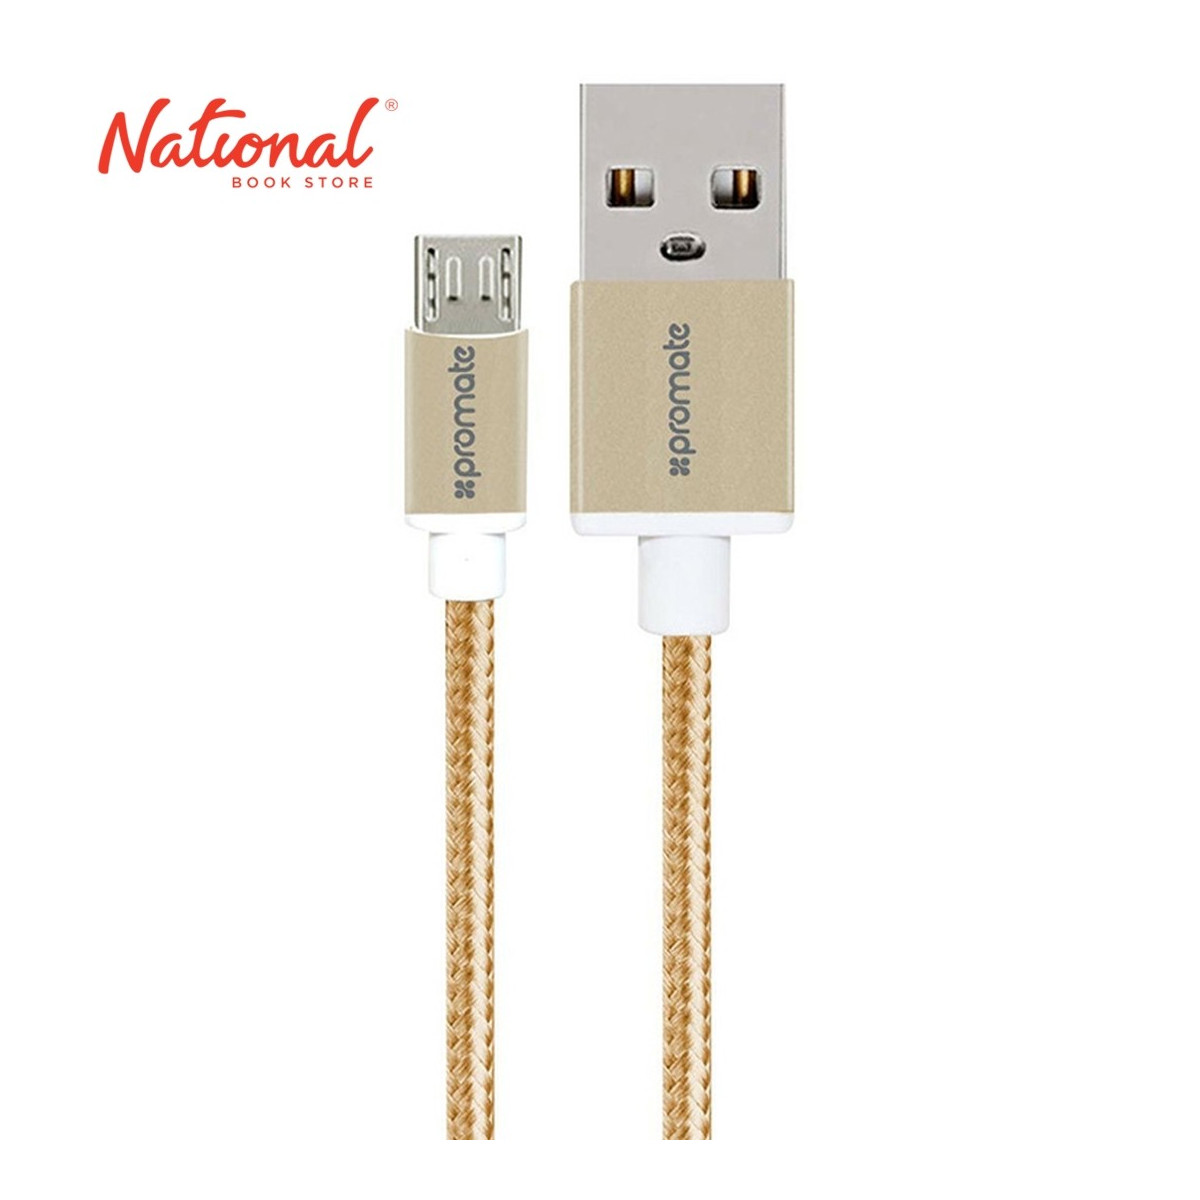 PROMATE MICRO USB CABLE  GOLD LINKMATE-U2M METAL MESH